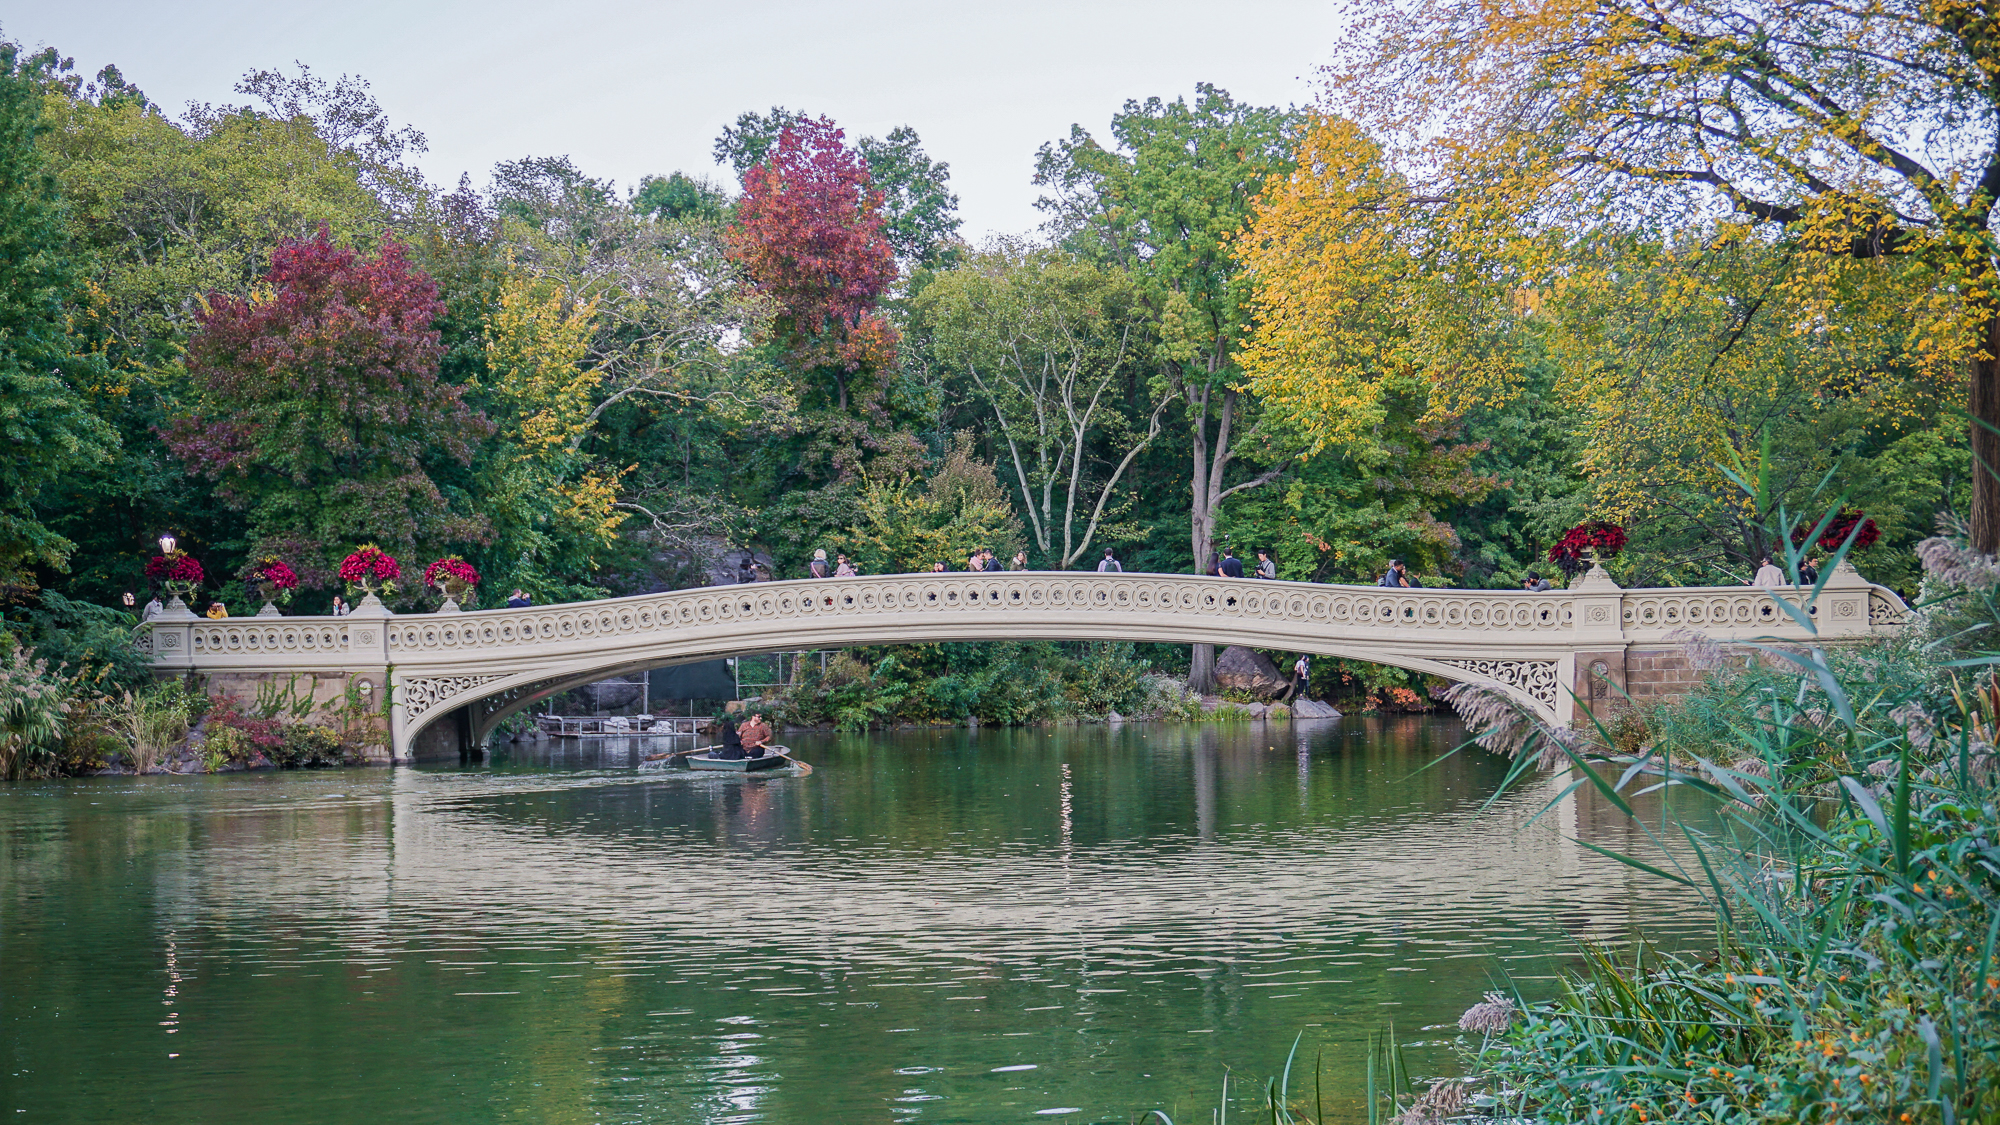 Foto da ponte do Central Park com árvores com folhas verdes, vermelhas e amarelas ao redor